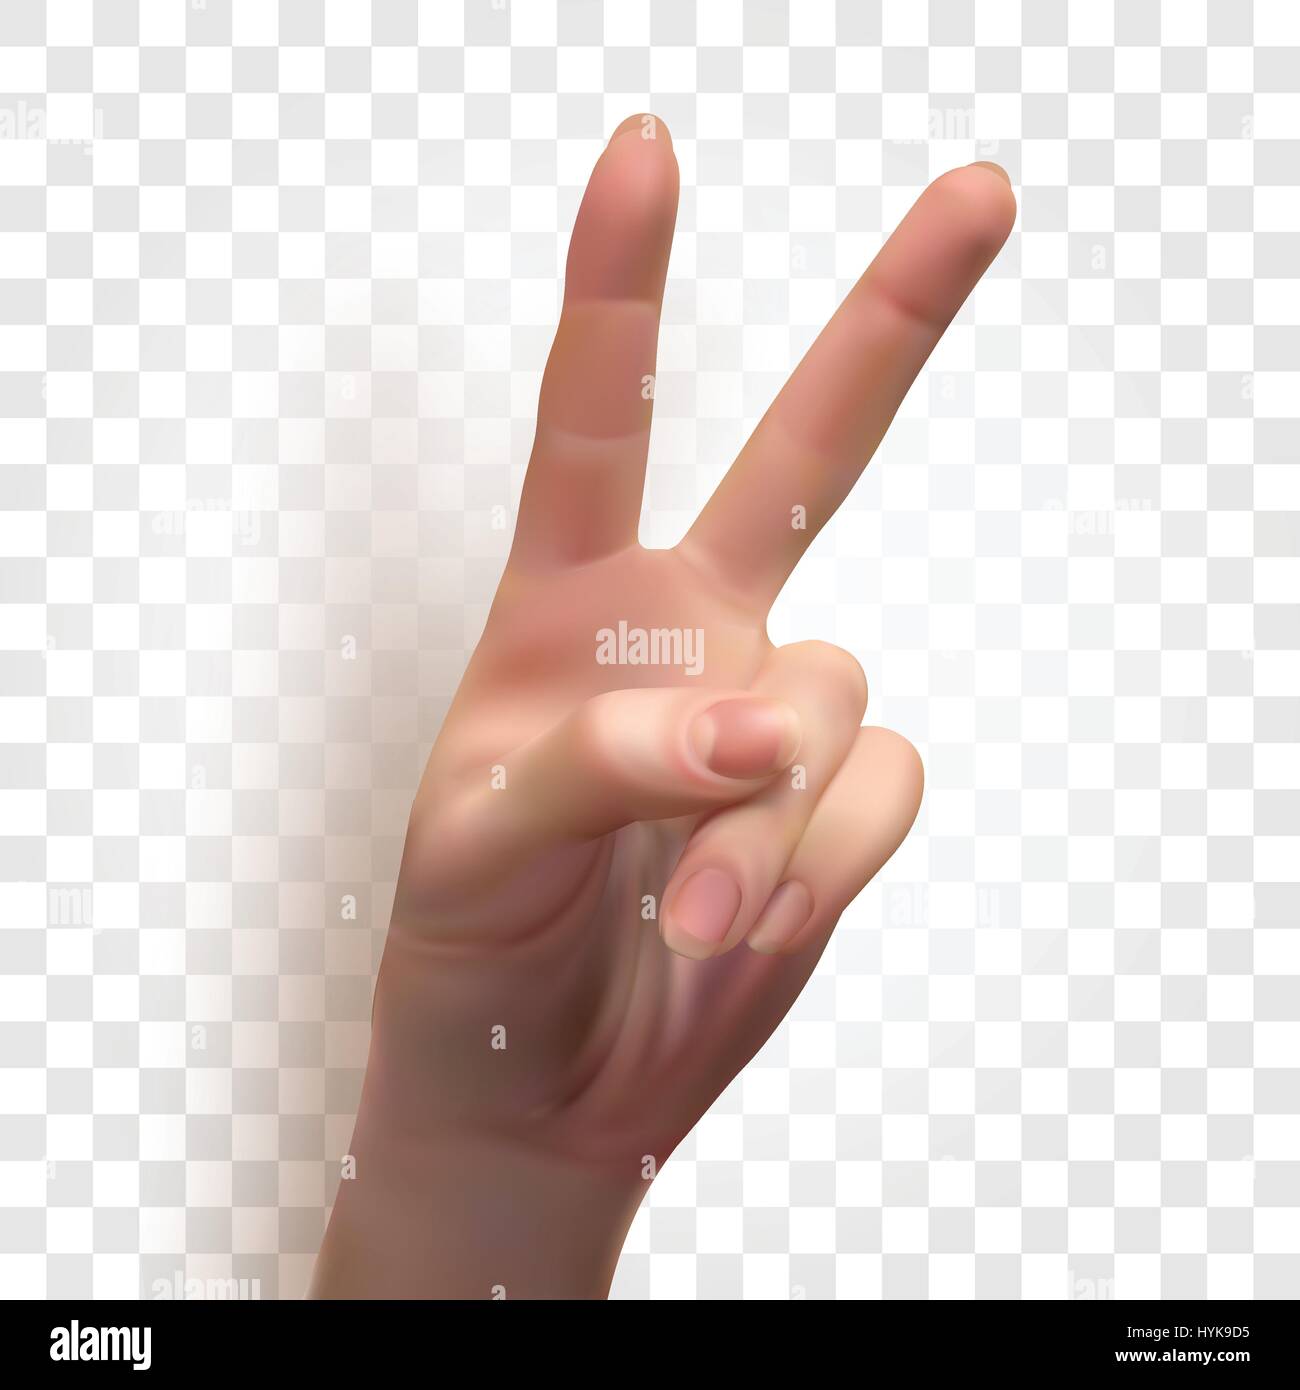 Isolierte abstrakte realistische menschliche Hand Bild auf karierten Hintergrund, zwei Finger Frieden oder Sieg Zeichen Vektor-illustration Stock Vektor